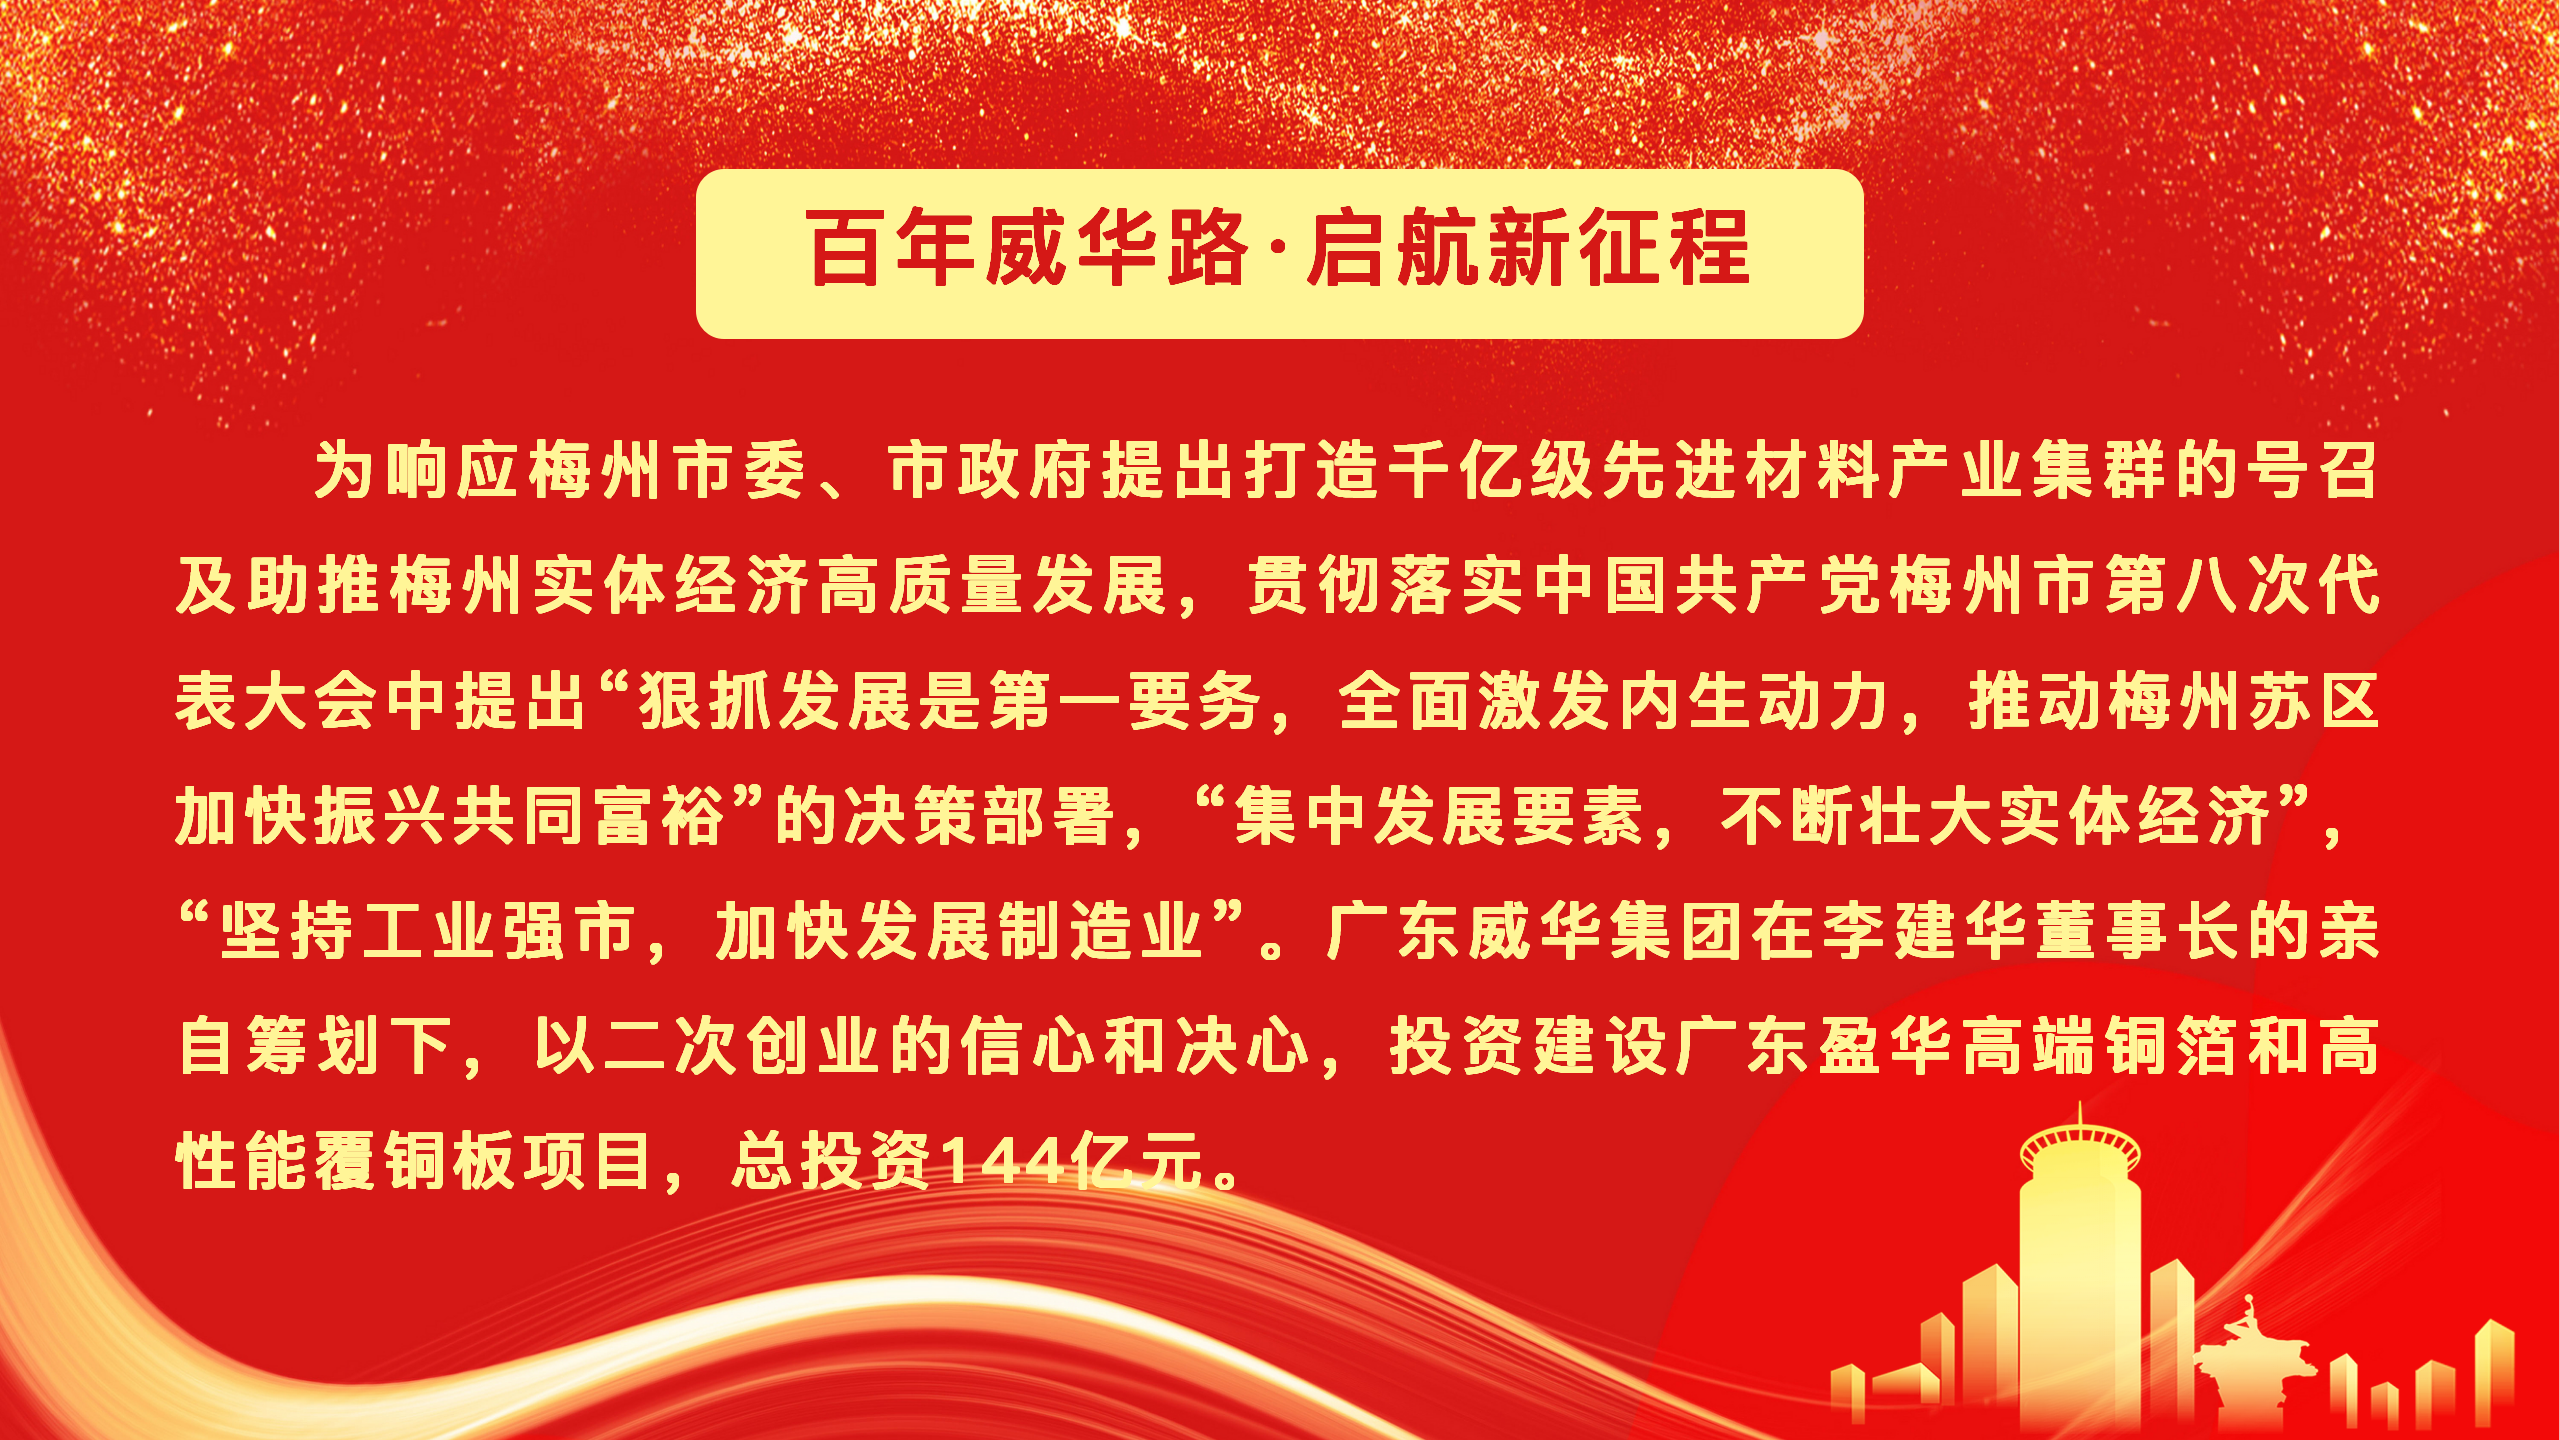 19体育官方(中国)有限公司官网、高性能覆铜板新项目动态报道！